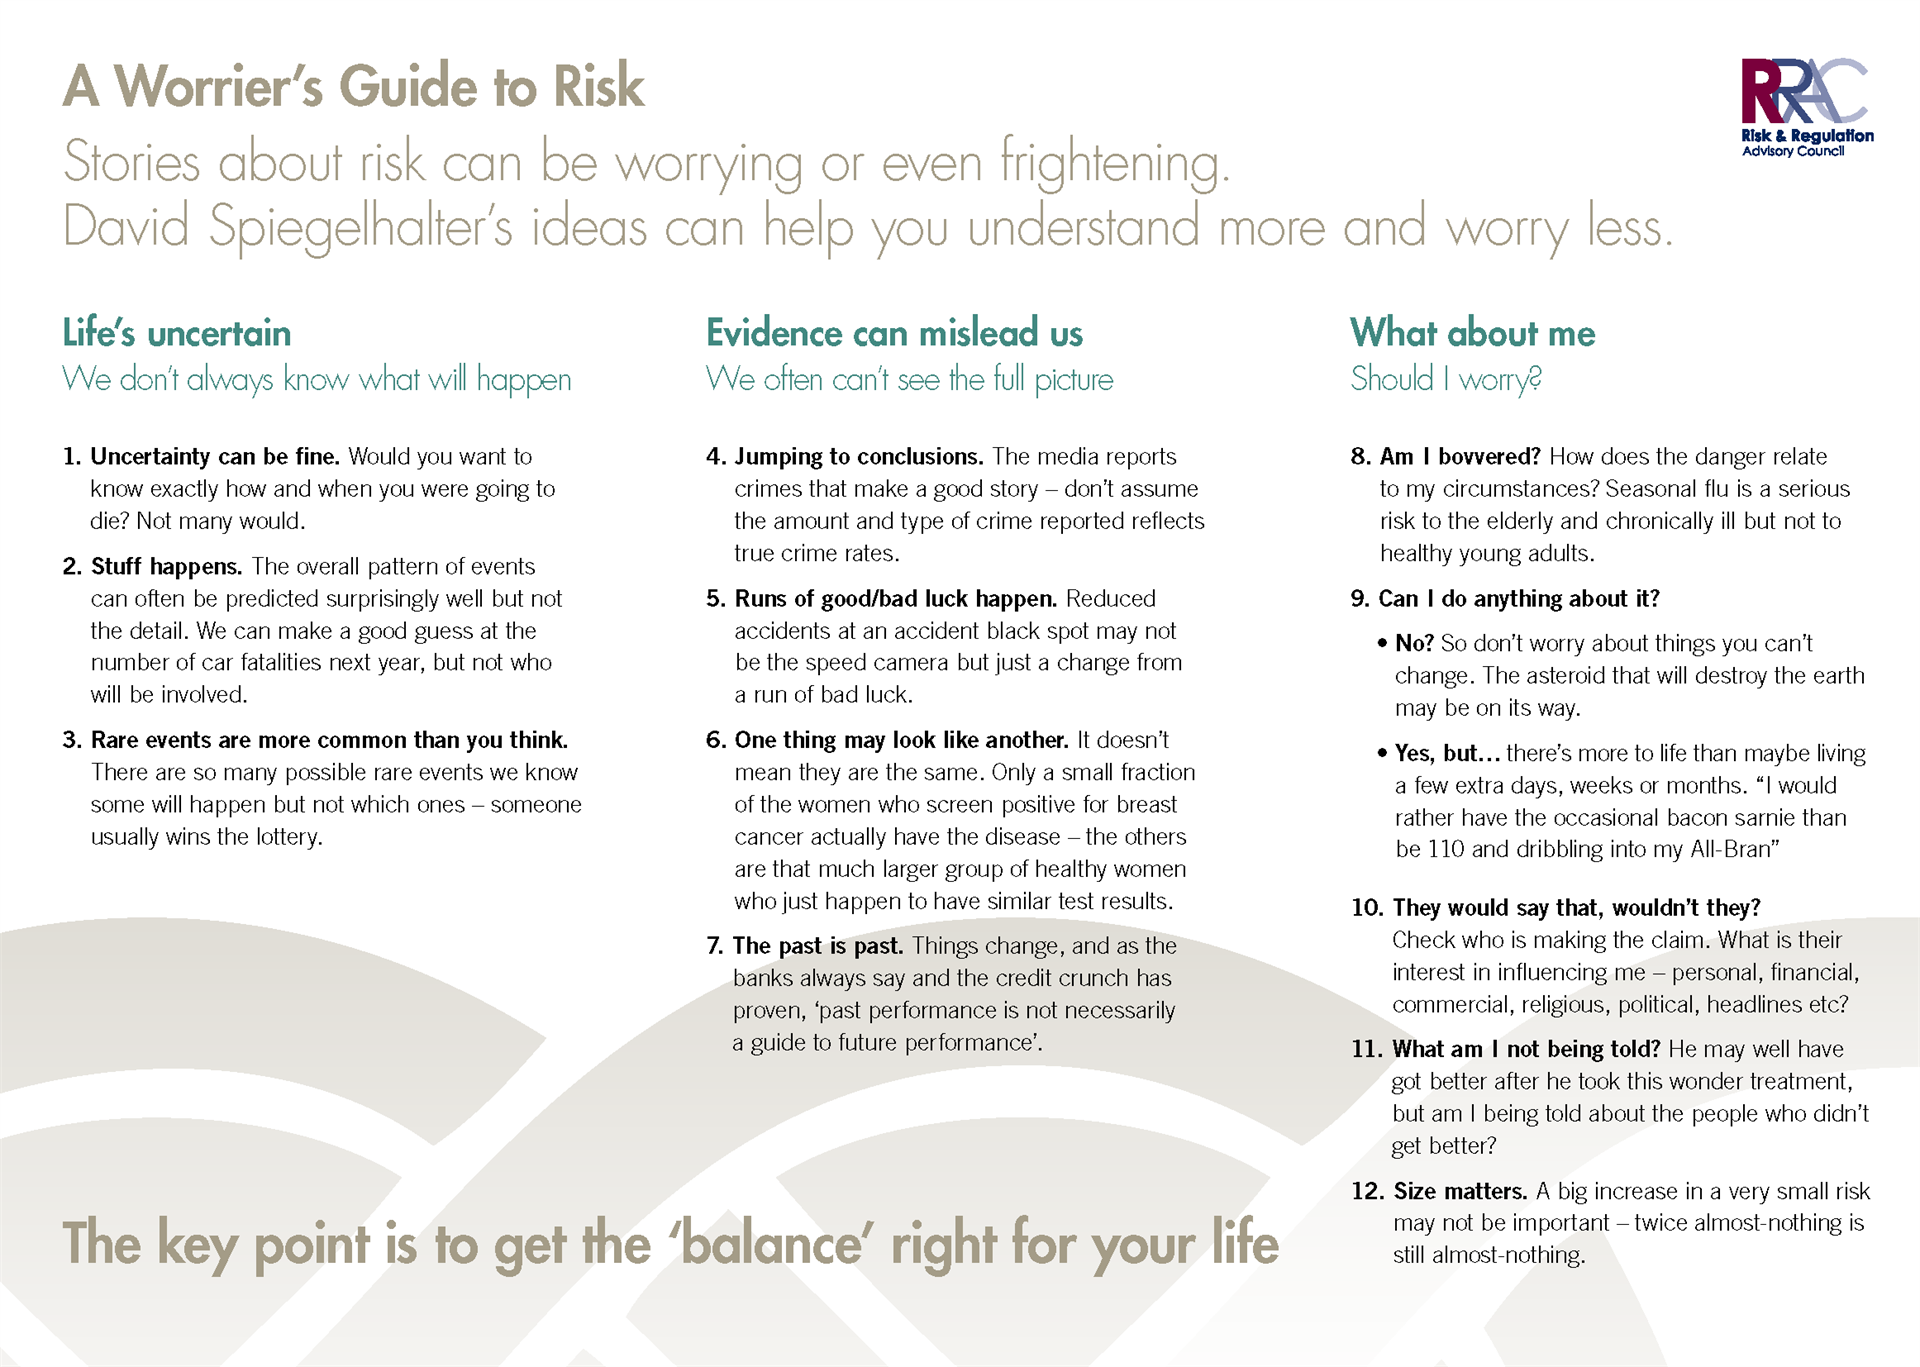 A Worrier's Guide to Risk | David Spiegelhalter